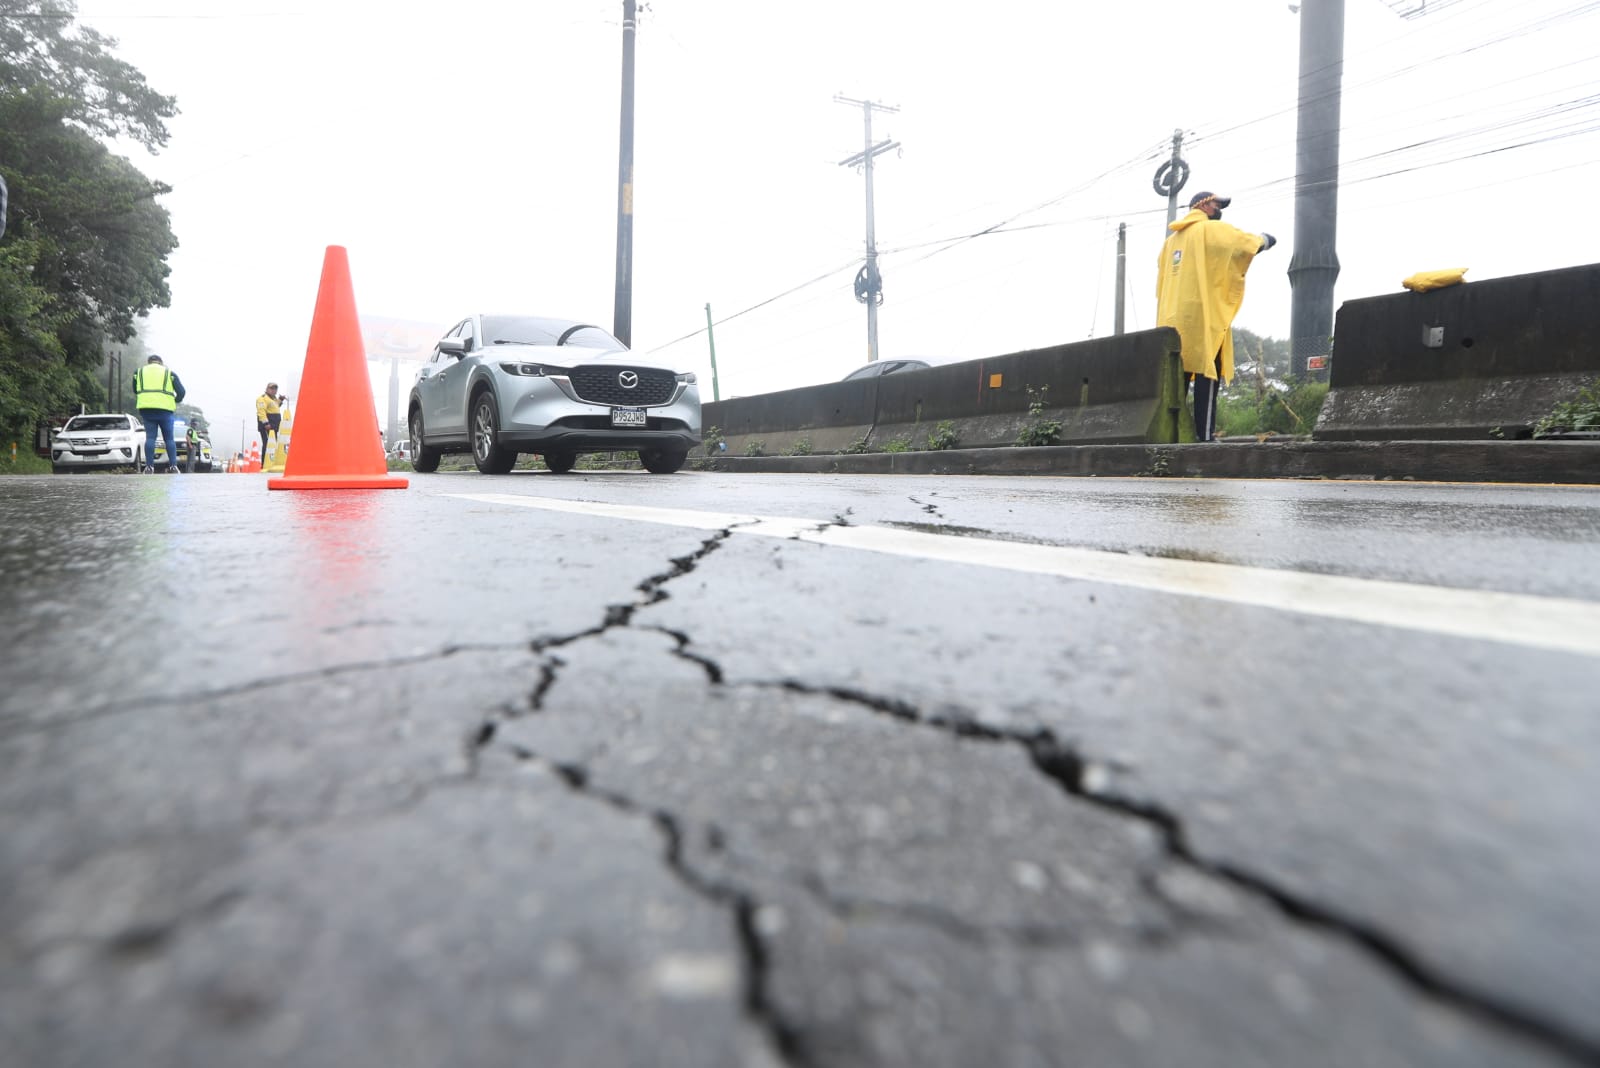 Varias grietas causan daños en el km 11.5 de carretera a El Salvador. (Foto Prensa Libre: Roberto López)